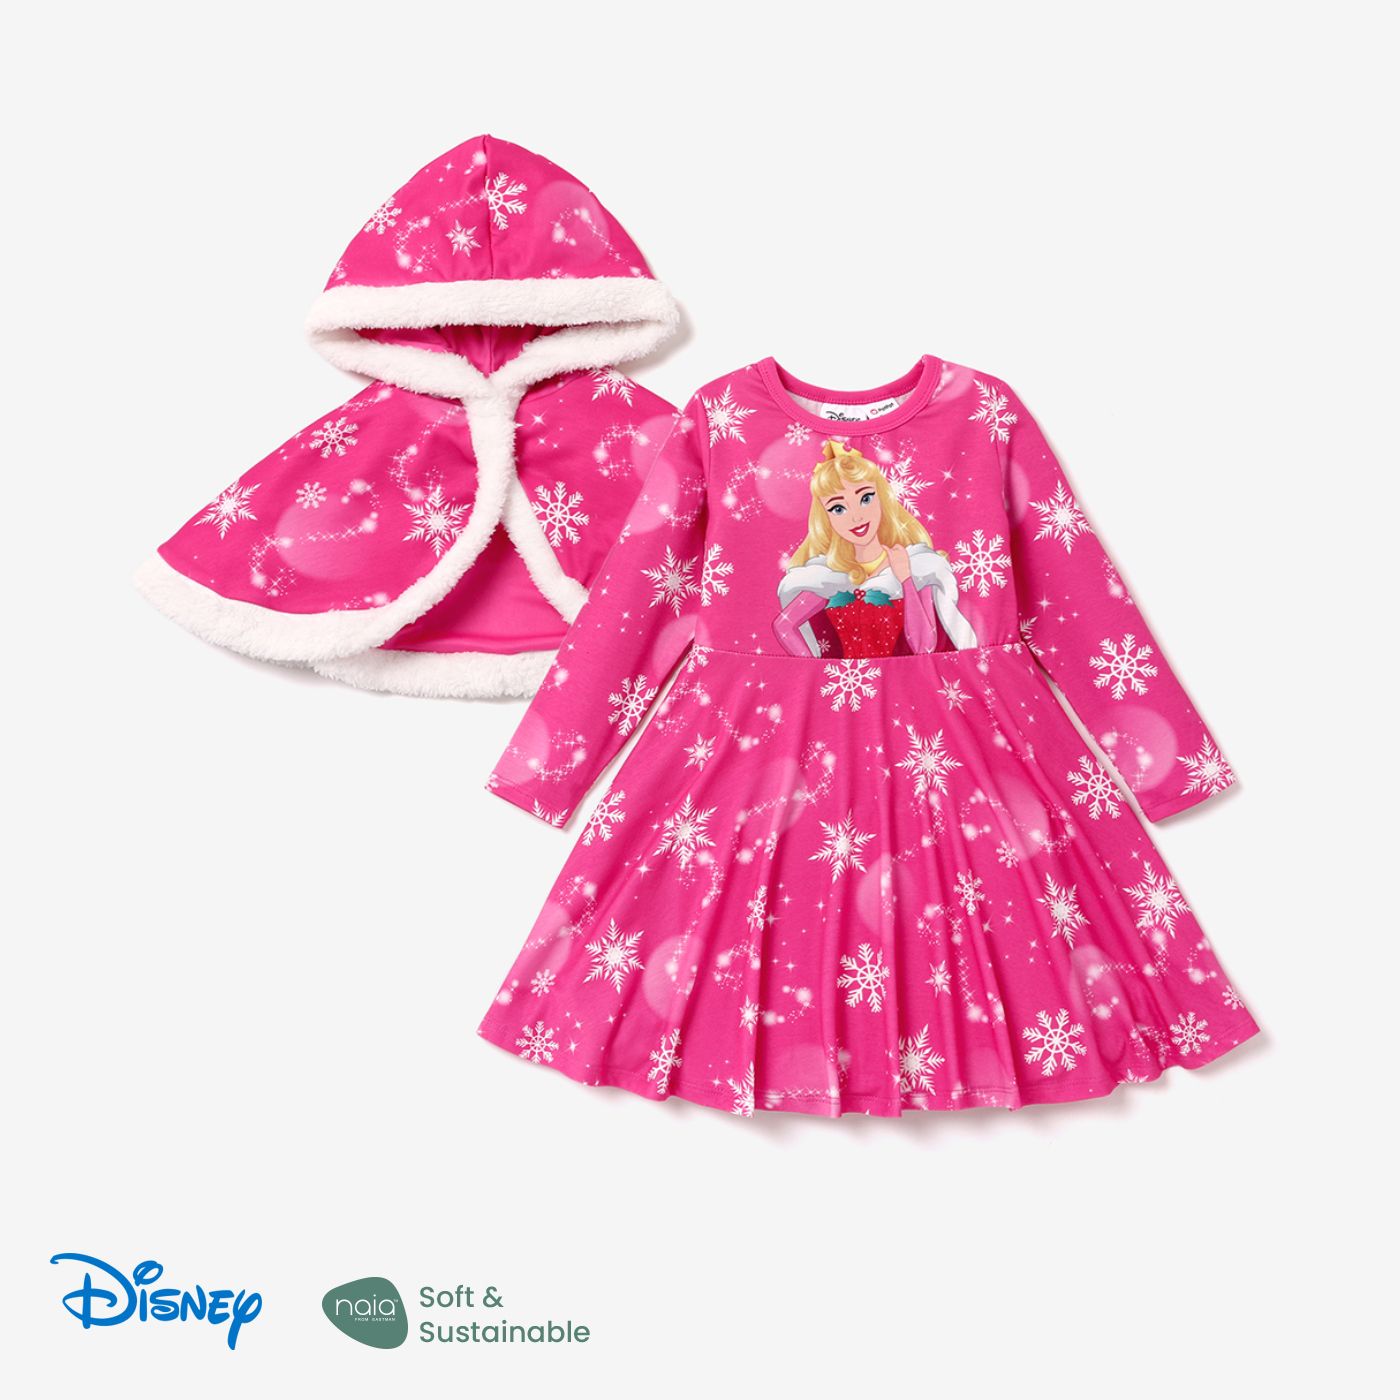 Disney Princess Toddler Girl Naiaâ¢ Character Print Long-sleeve Dress And Hooded Allover Snowflake Print Cloak Set